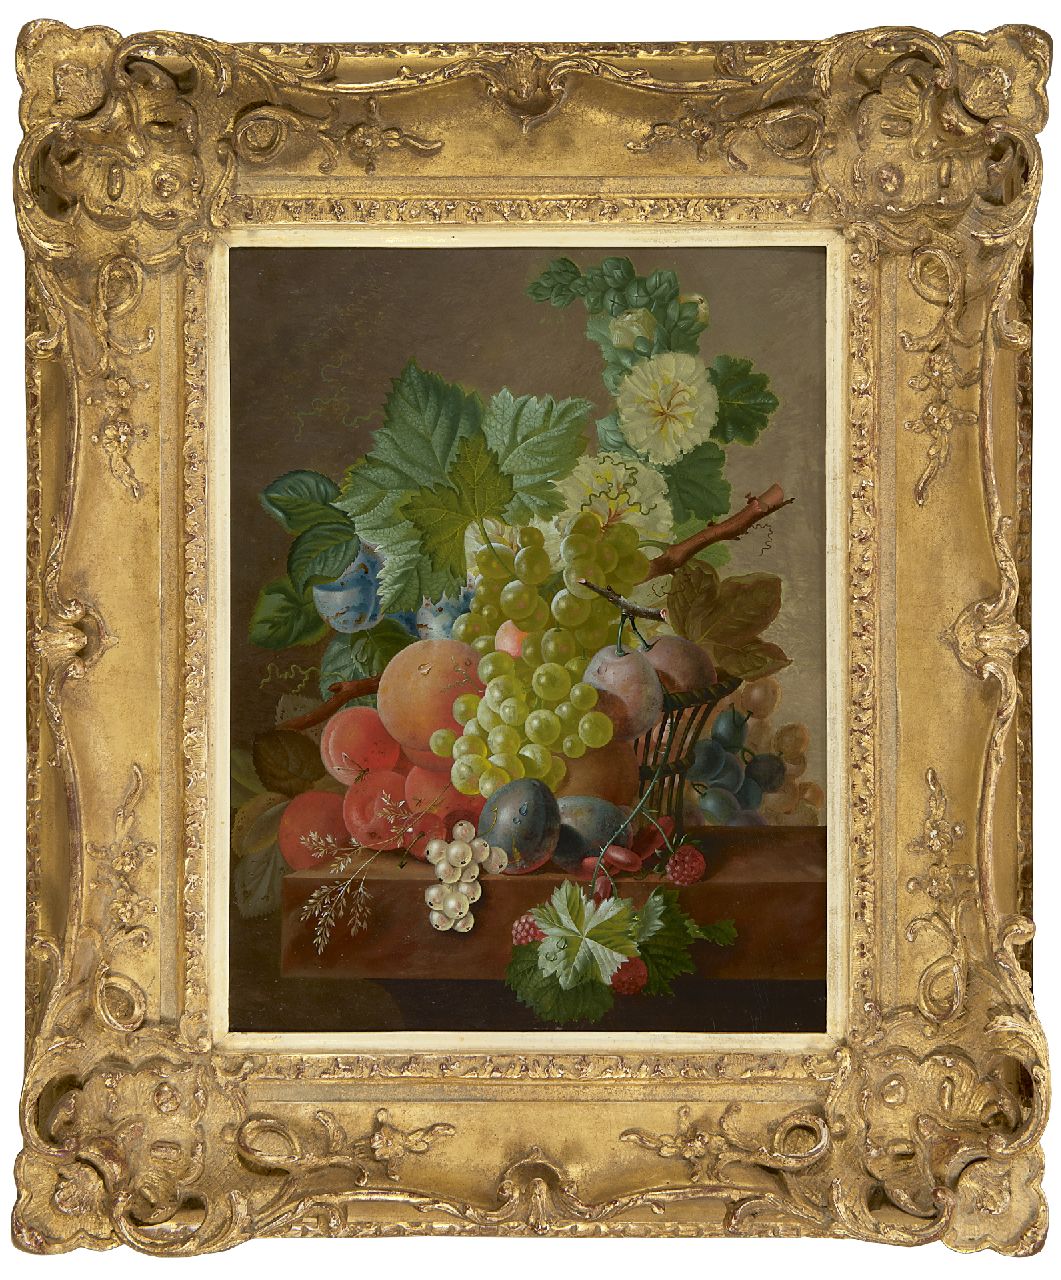 Bruyn J.C. de | Johannes Cornelis de Bruyn | Schilderijen te koop aangeboden | Druiven, perziken en ander fruit op een stenen plint, olieverf op paneel 42,6 x 32,6 cm